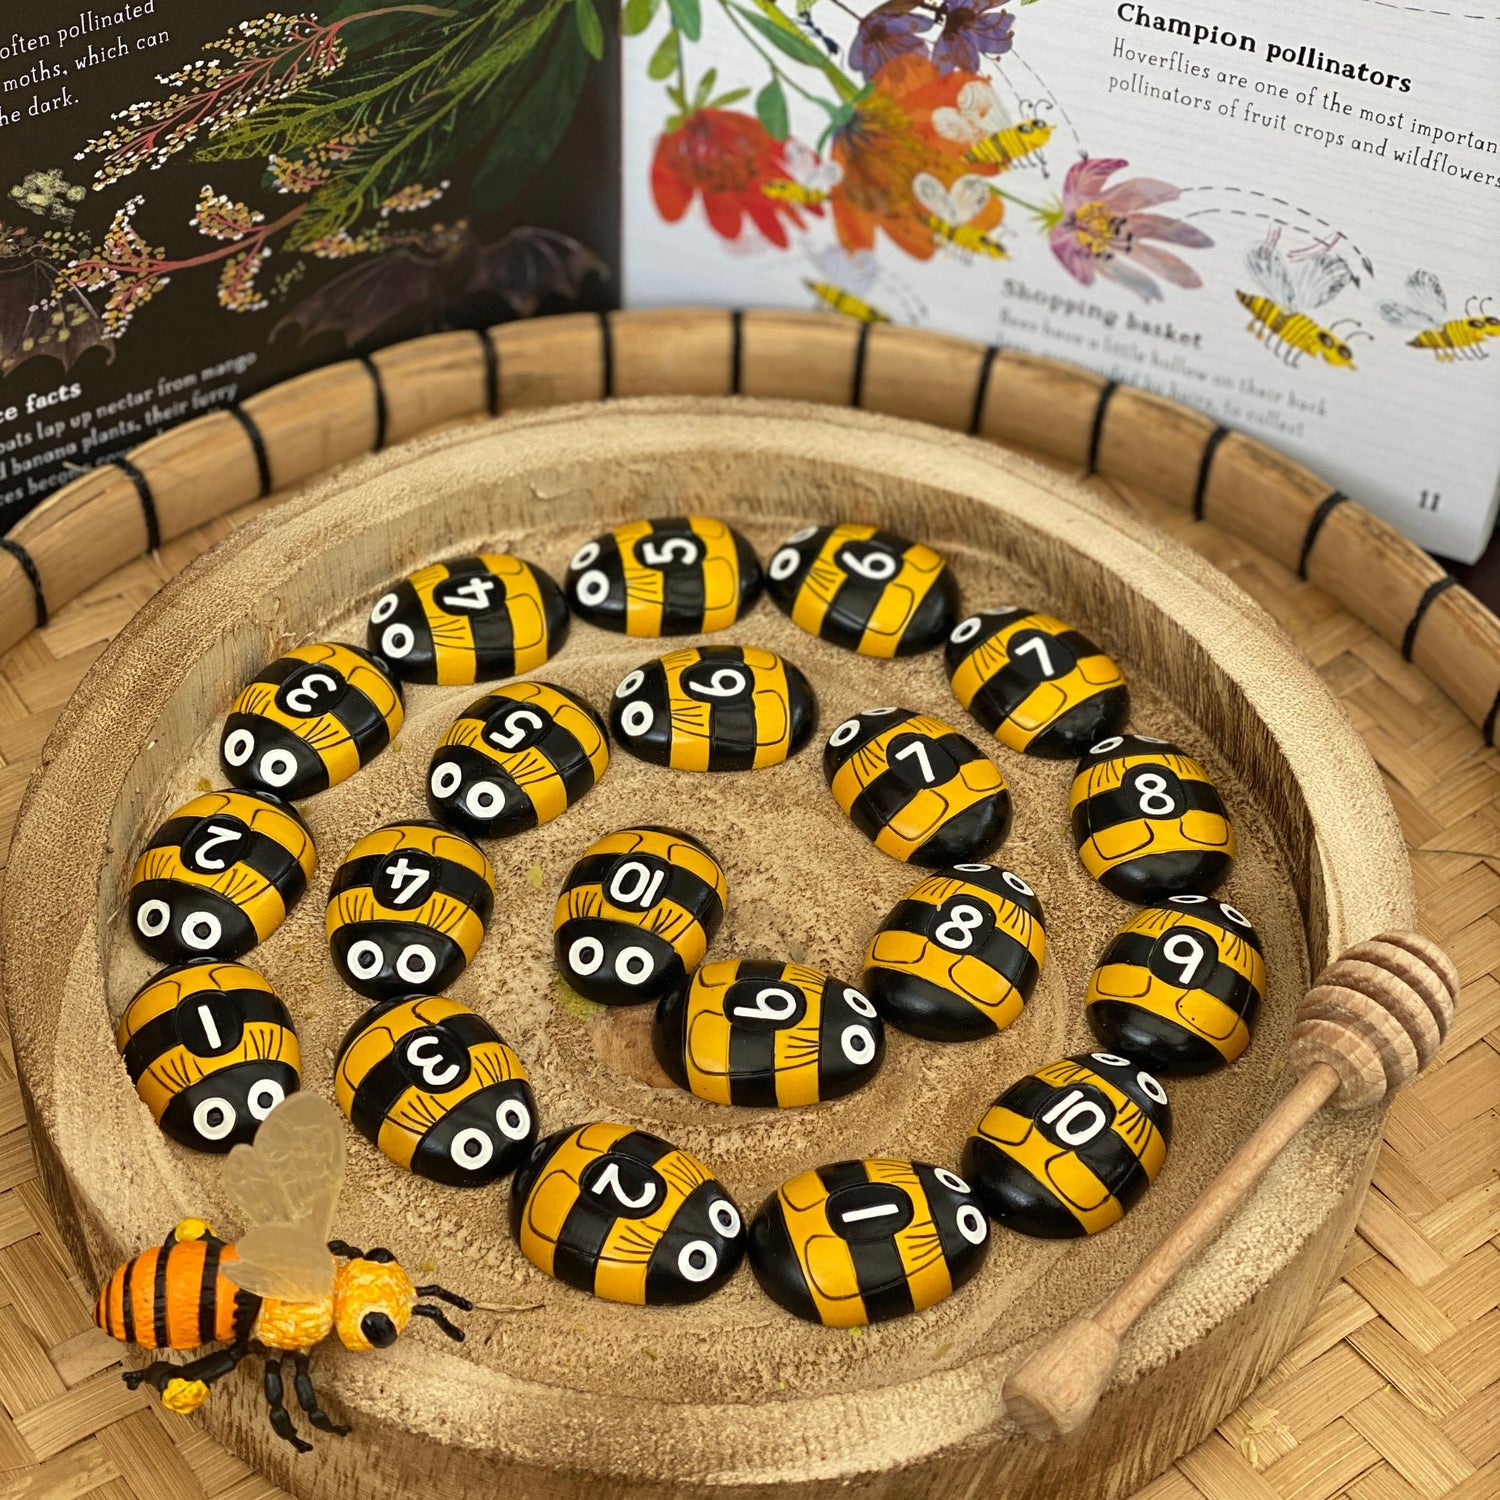 Yellow Door Honey Bee Number Stones (Set of 20)